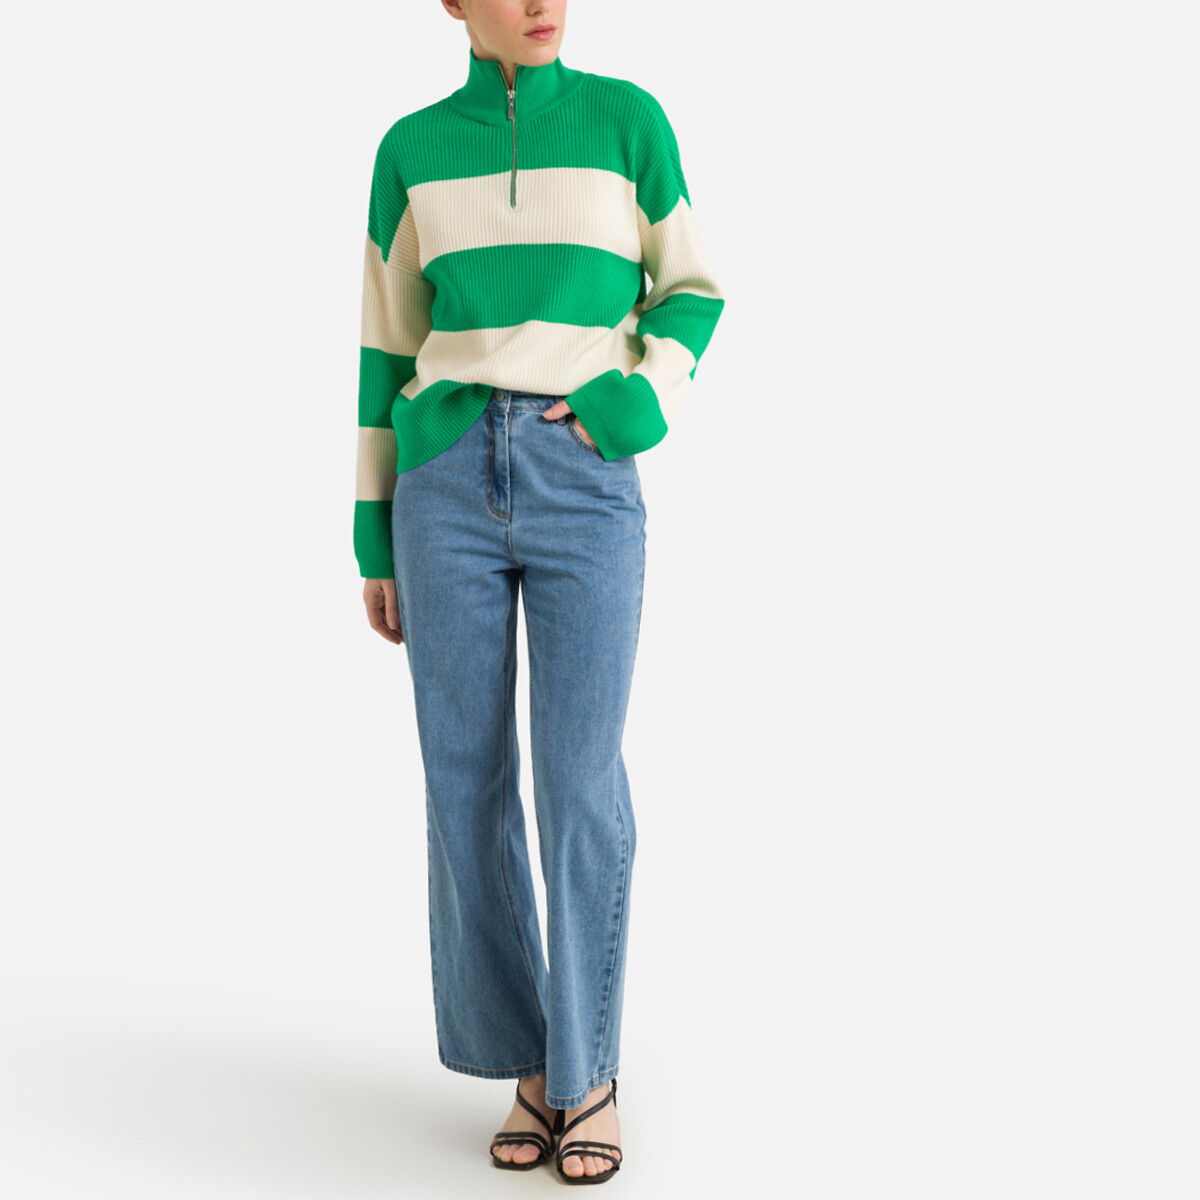 Пуловер с воротником-стойкой на молнии XS зеленый